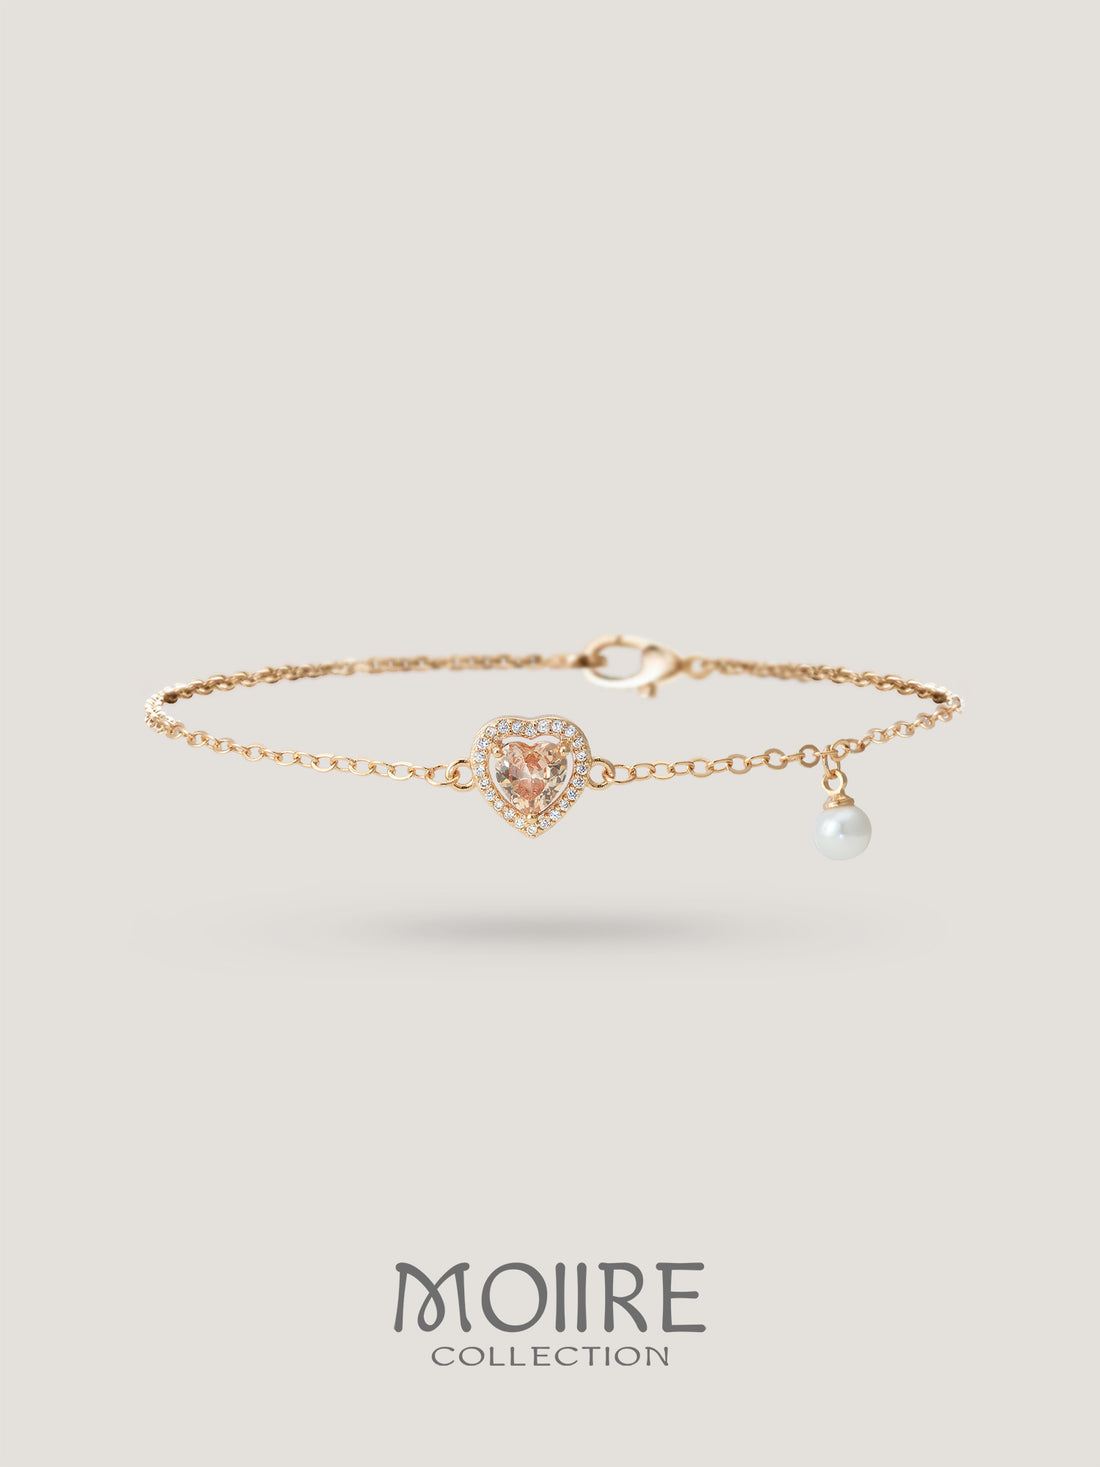 Moiire Jewelry | 交給時間